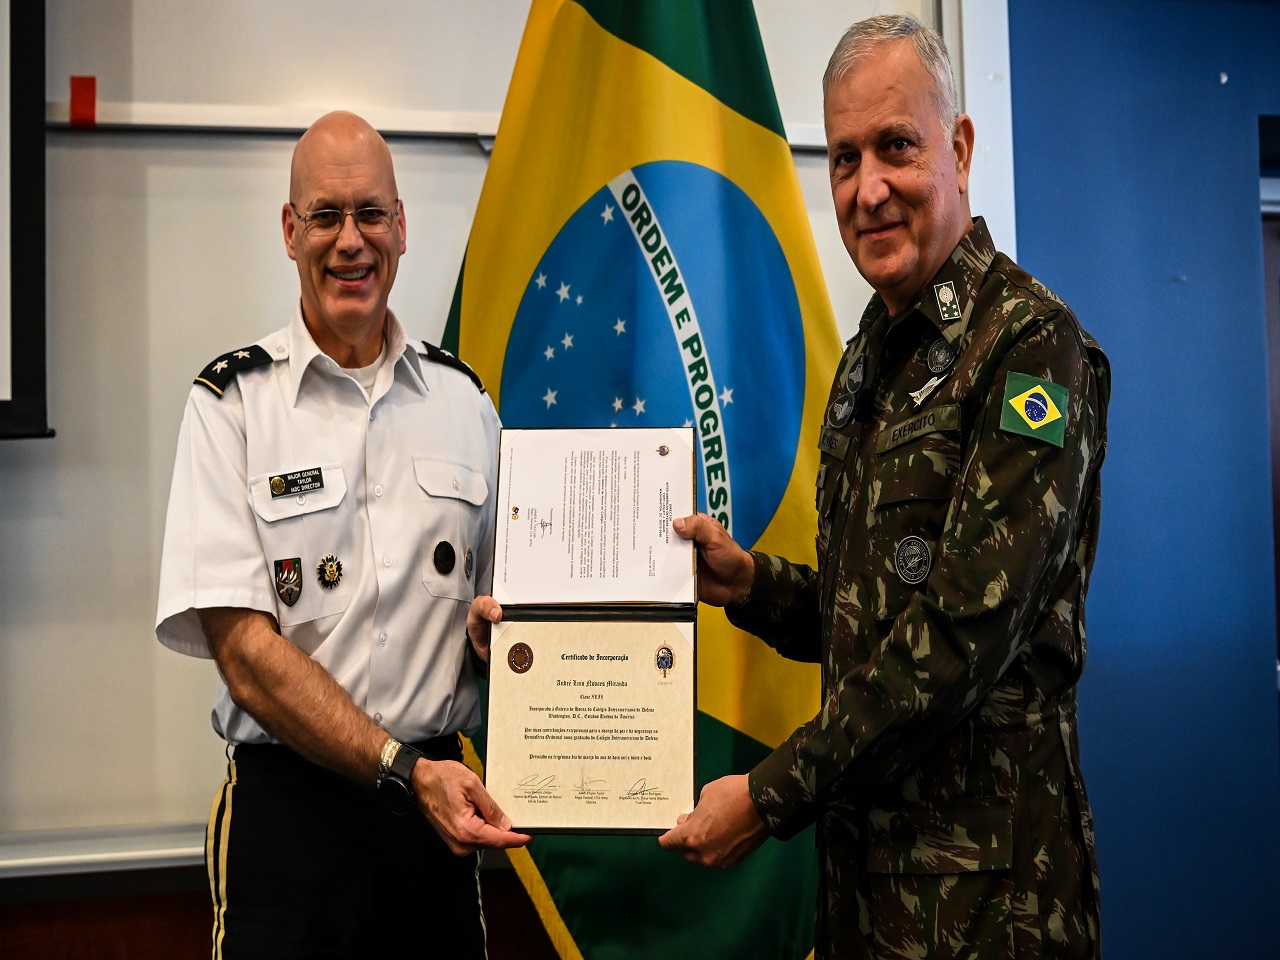 Comandante do Exército Brasileiro realiza visita oficial aos Estados Unidos  - Diplomacia Business